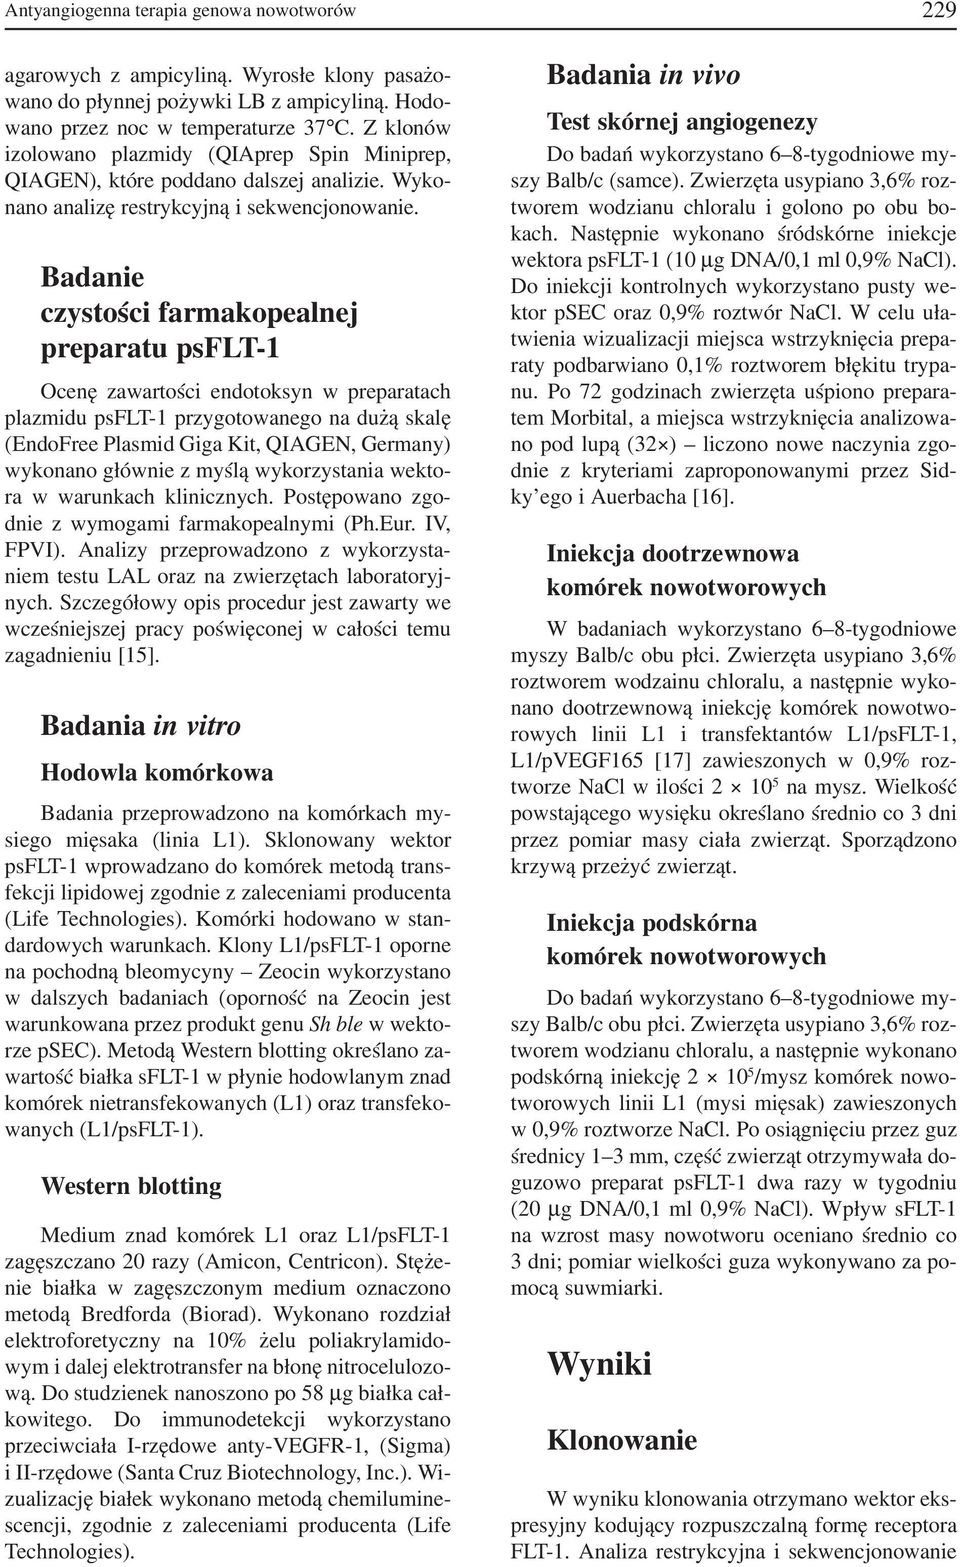 Badanie czystości farmakopealnej preparatu psflt 1 Ocenę zawartości endotoksyn w preparatach plazmidu psflt 1 przygotowanego na dużą skalę (EndoFree Plasmid Giga Kit, QIAGEN, Germany) wykonano